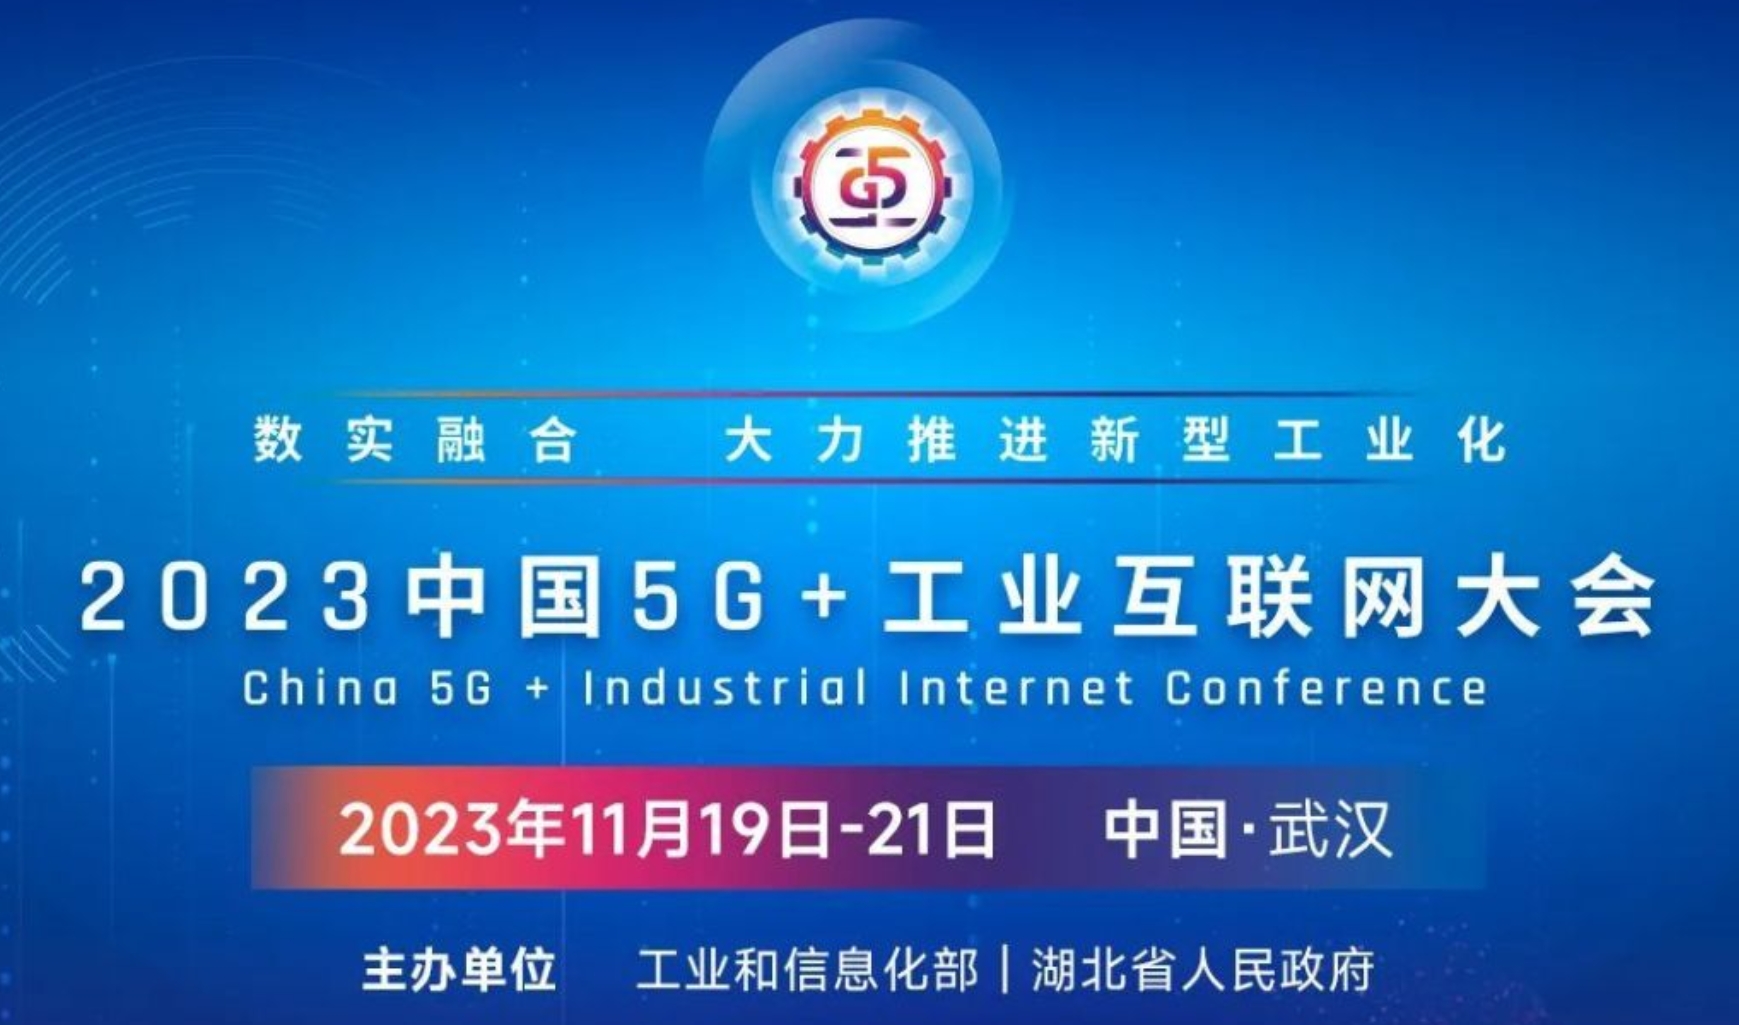 院士大咖齐聚2023中国5G+工业互联网大会